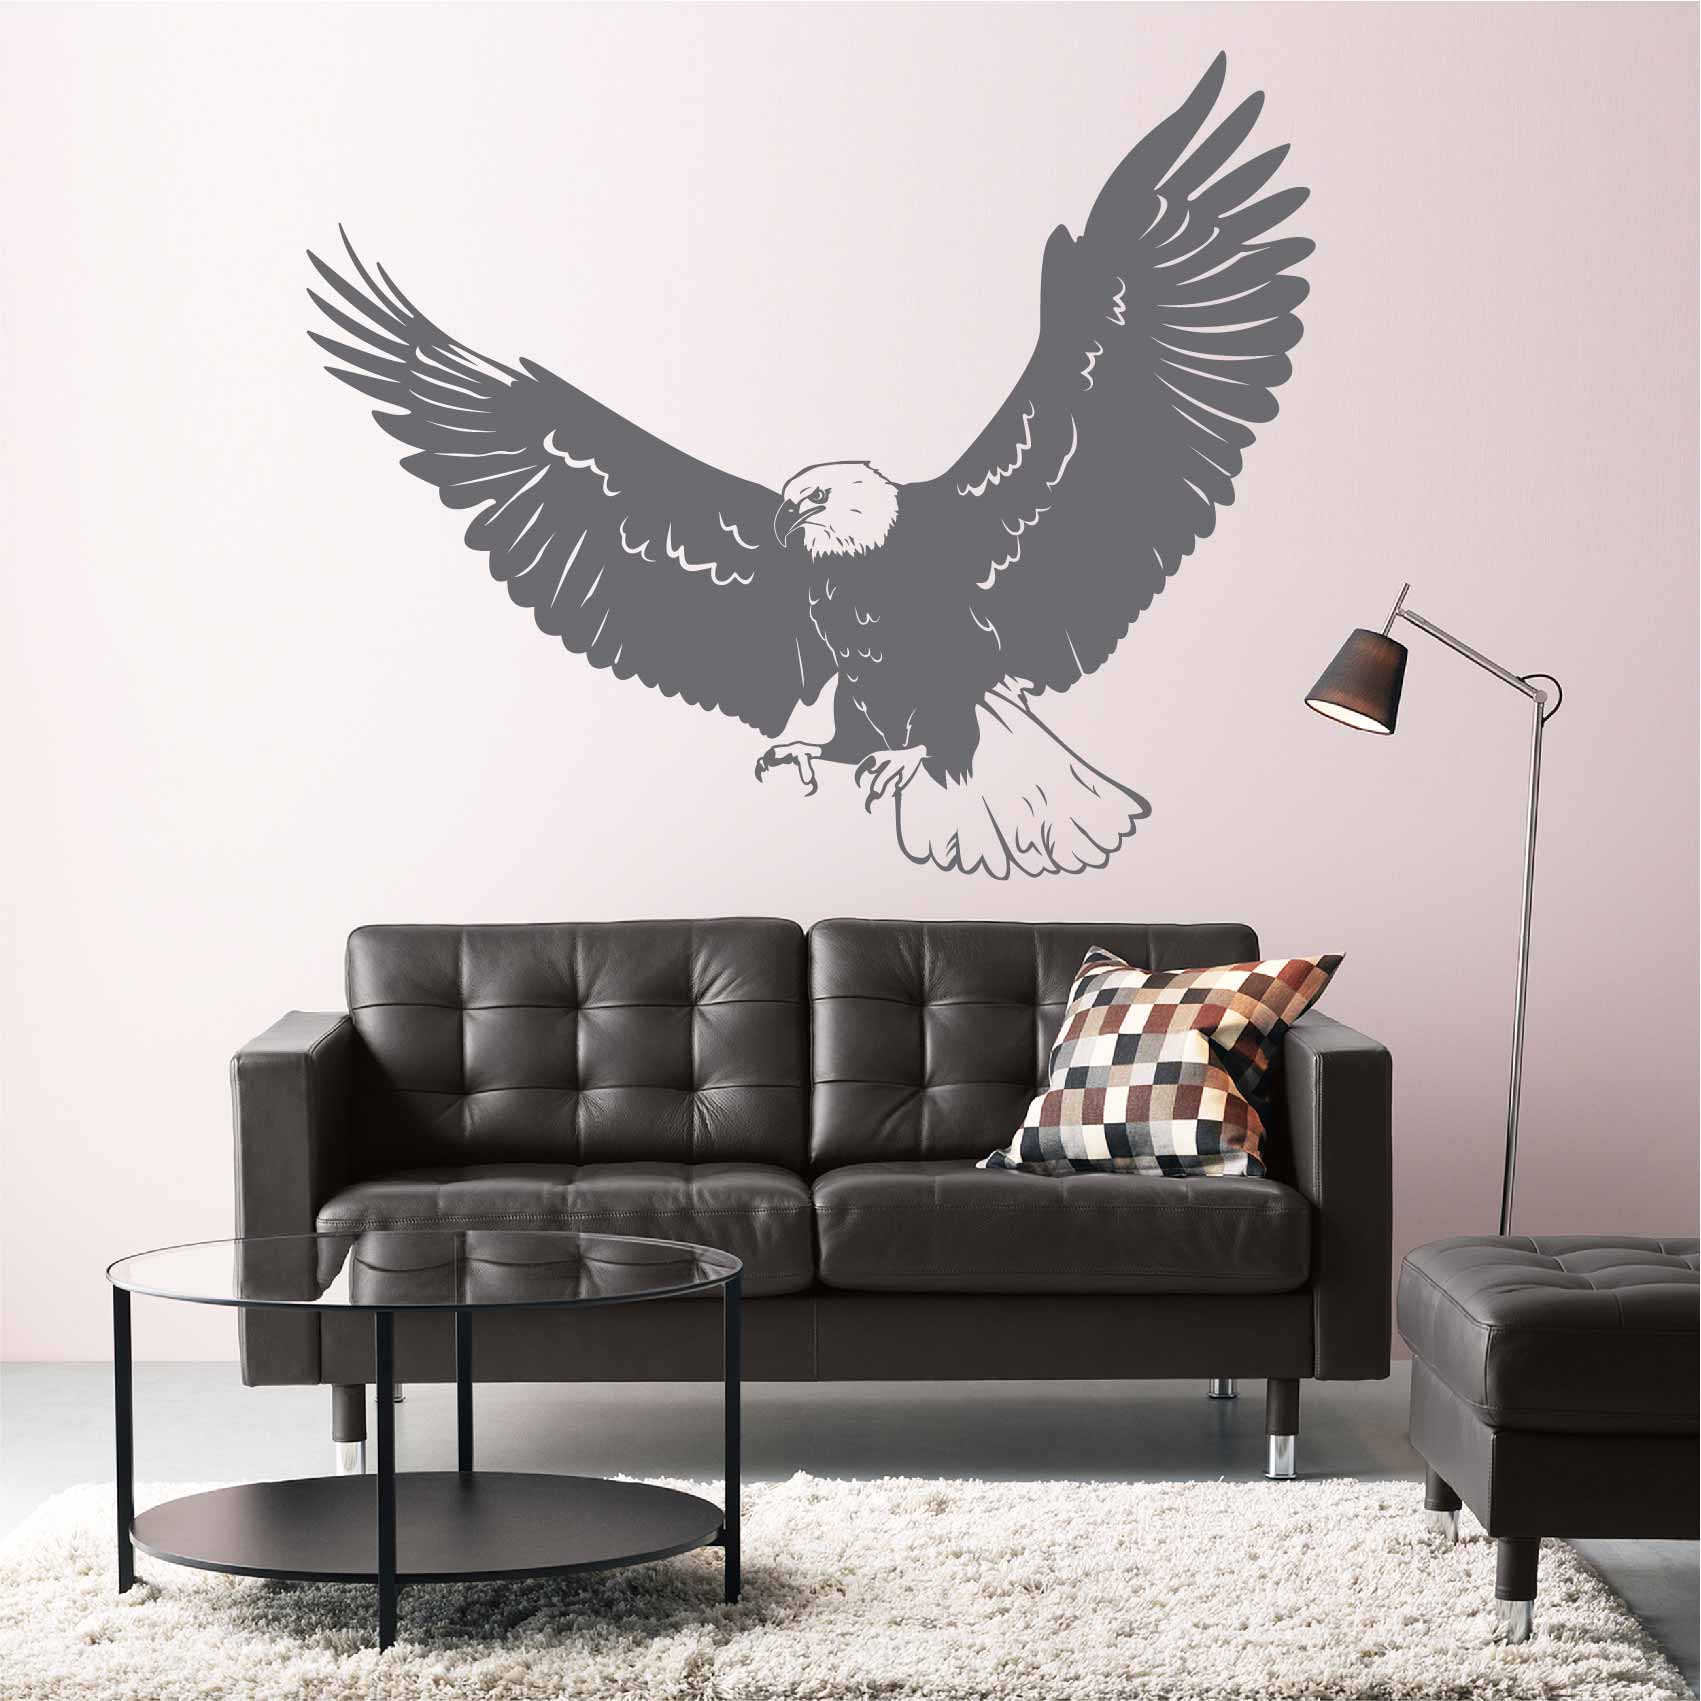 stickers-aigle-ref17oiseaux-stickers-muraux-oiseaux-autocollant-chambre-salon-deco-sticker-mural-oiseau-animaux